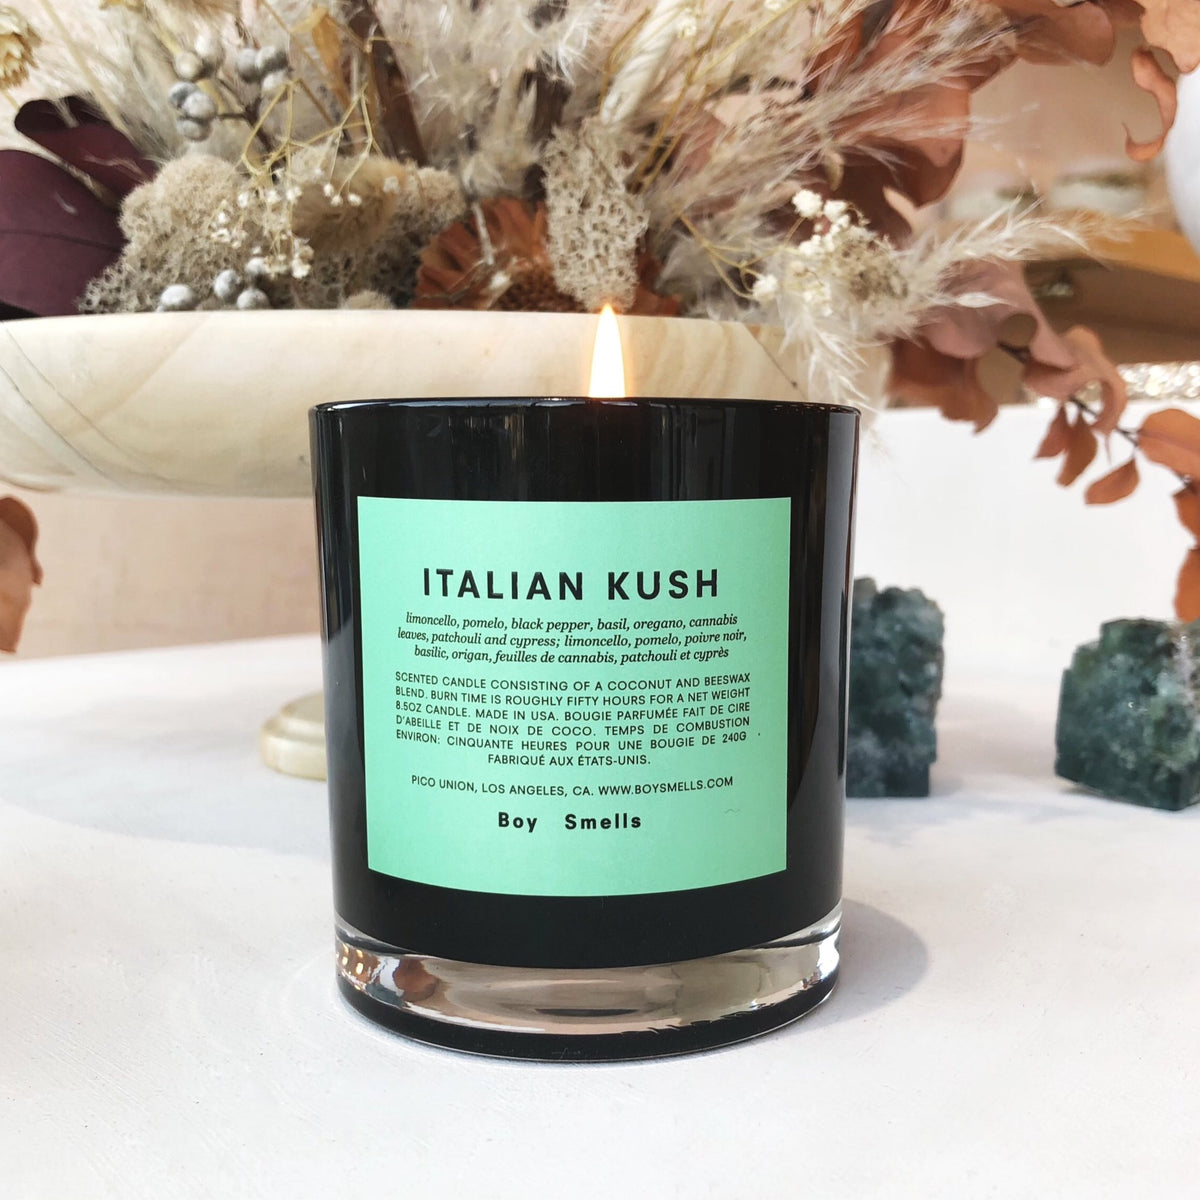 Italian Kush Candle